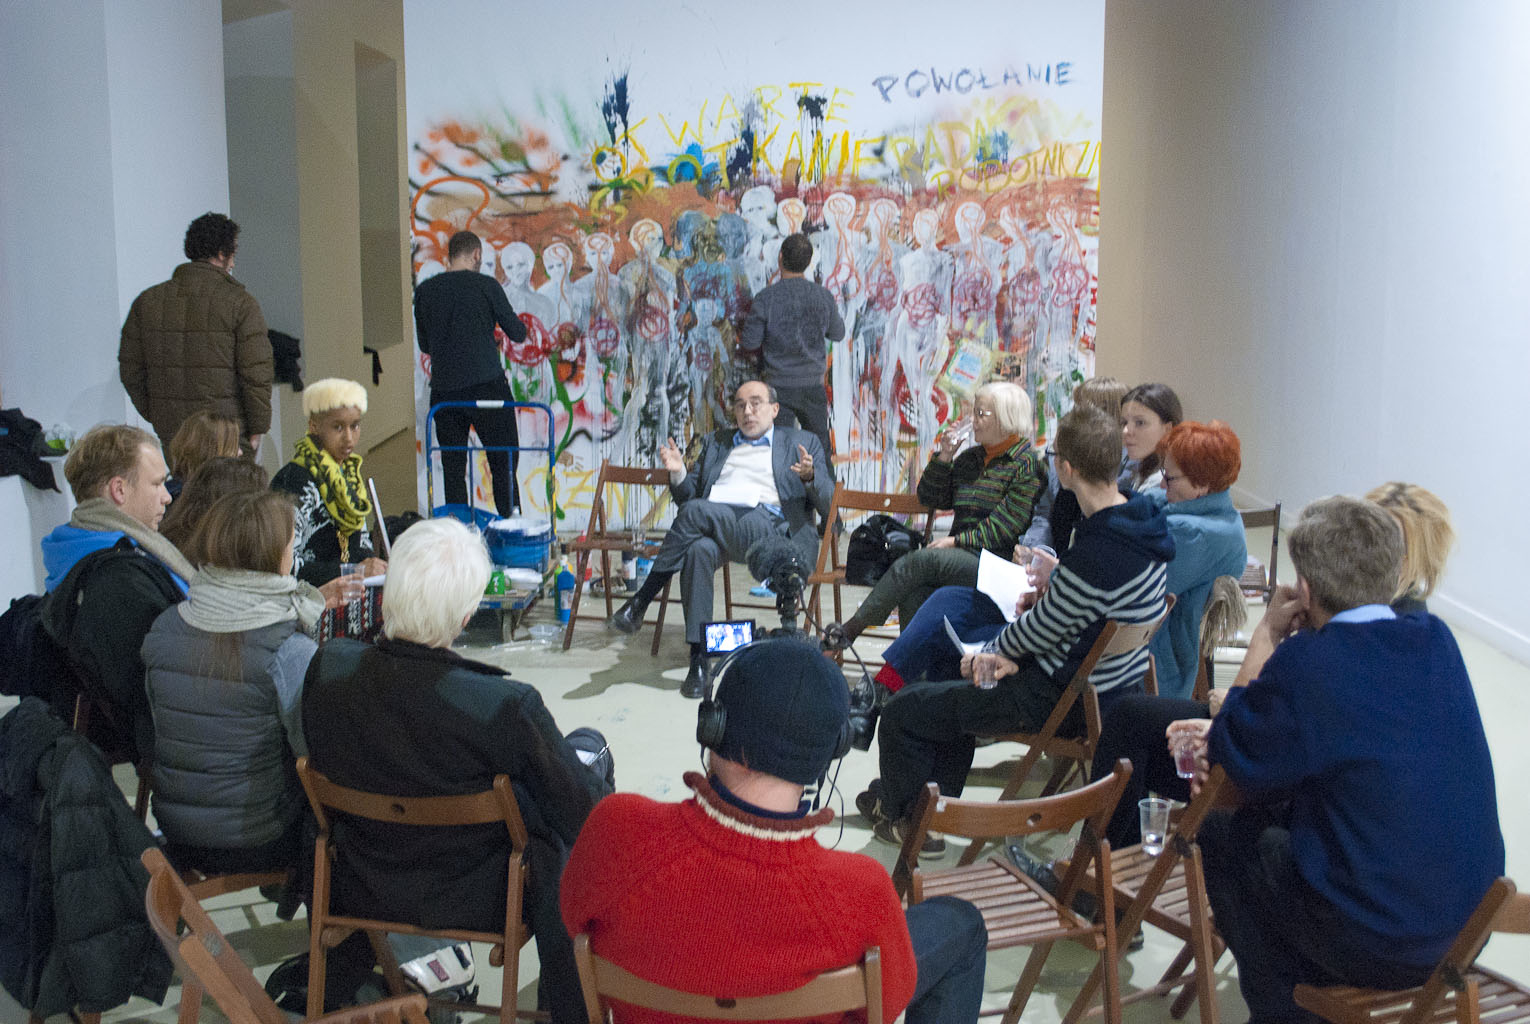 Dyskusja z udziałem pracowników i dyrekcji, na tle kolektywnego malowidła WHC, 11.12.2013, fot. Gabriella Csoszó